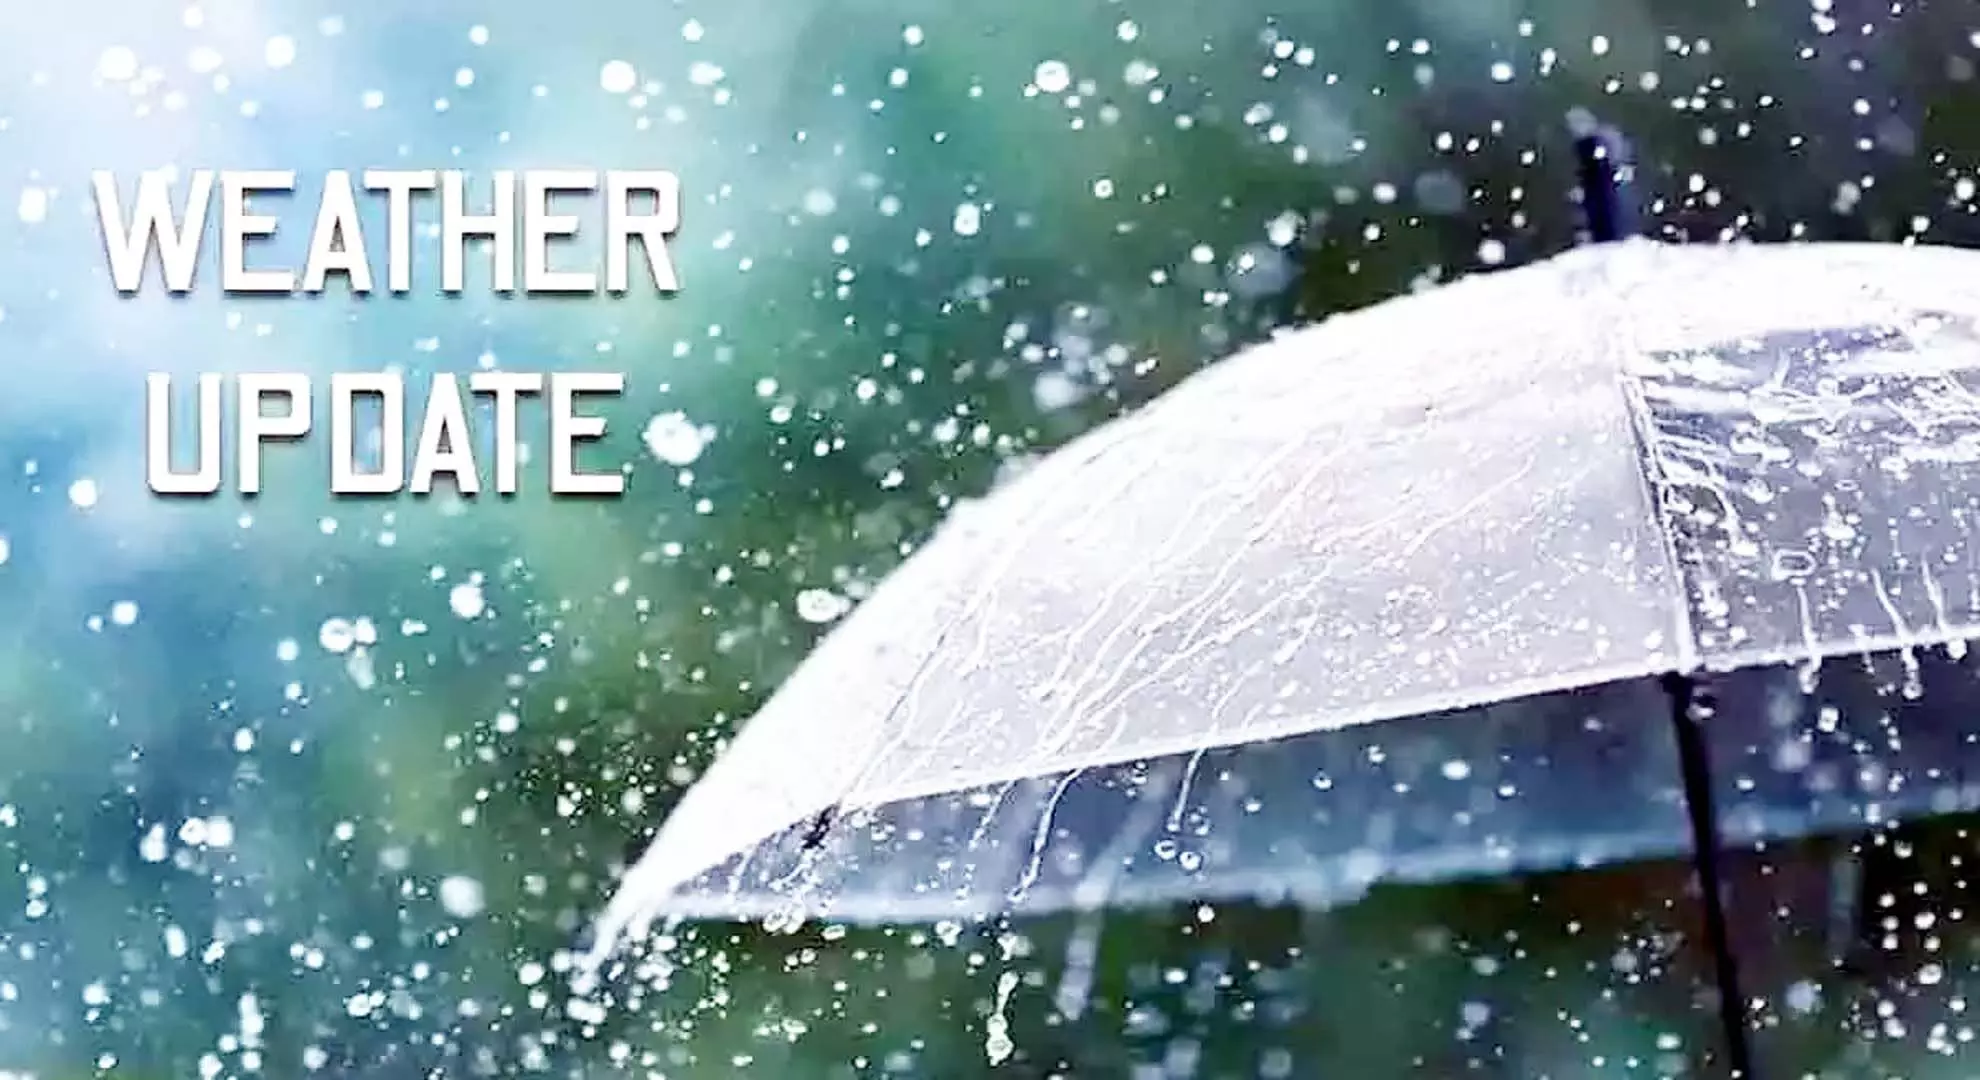 मौसम चेतावनी: आंध्र प्रदेश के कुछ हिस्सों में तापमान में गिरावट, हल्की बारिश की संभावना